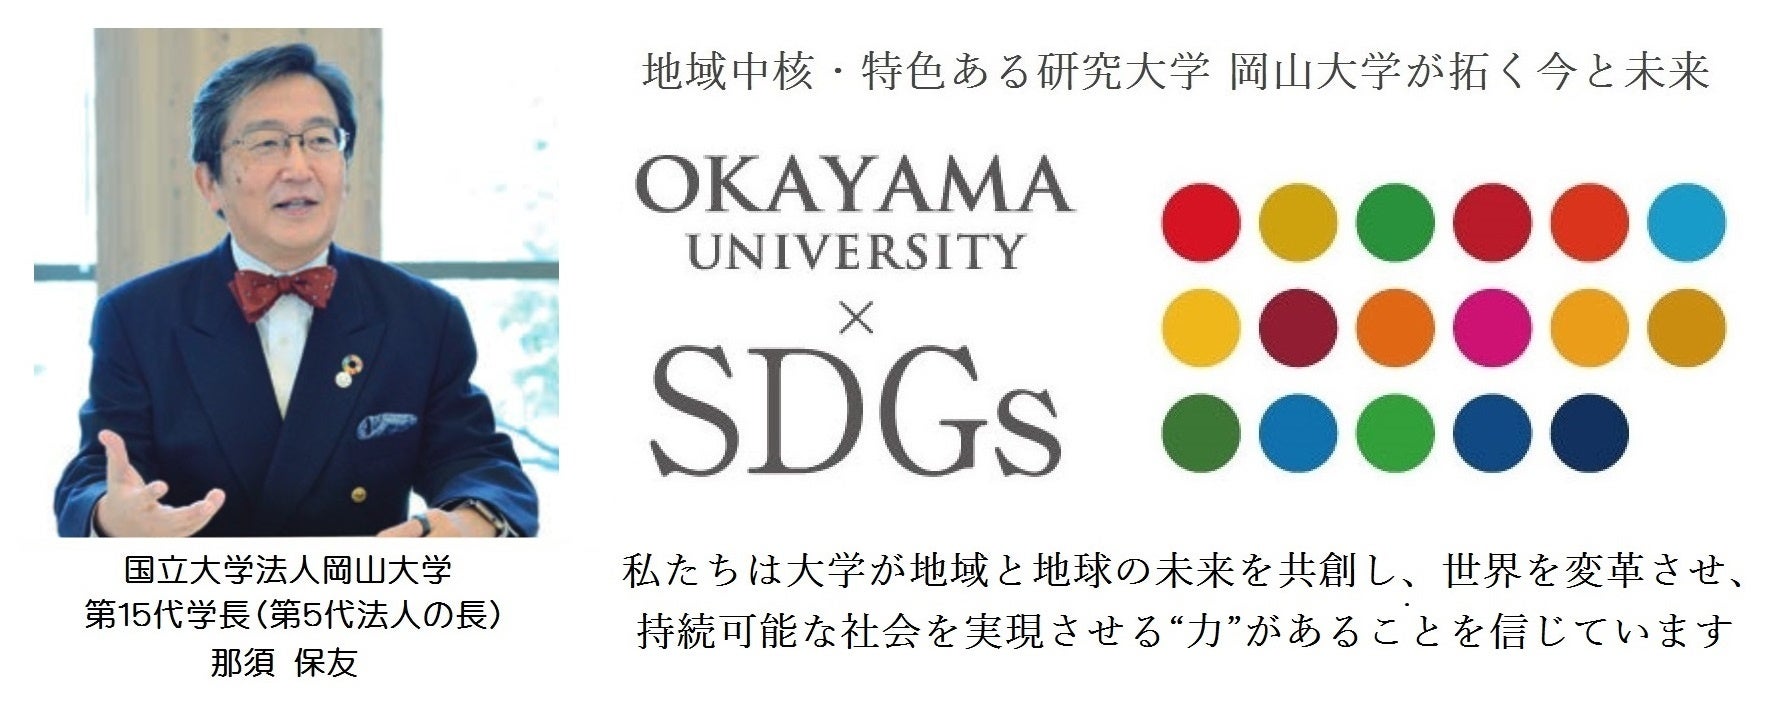 【岡山大学】「令和5年度学生イノベーションチャレンジ推進プロジェクト」で岡山大学学生団体が準グランプリ...